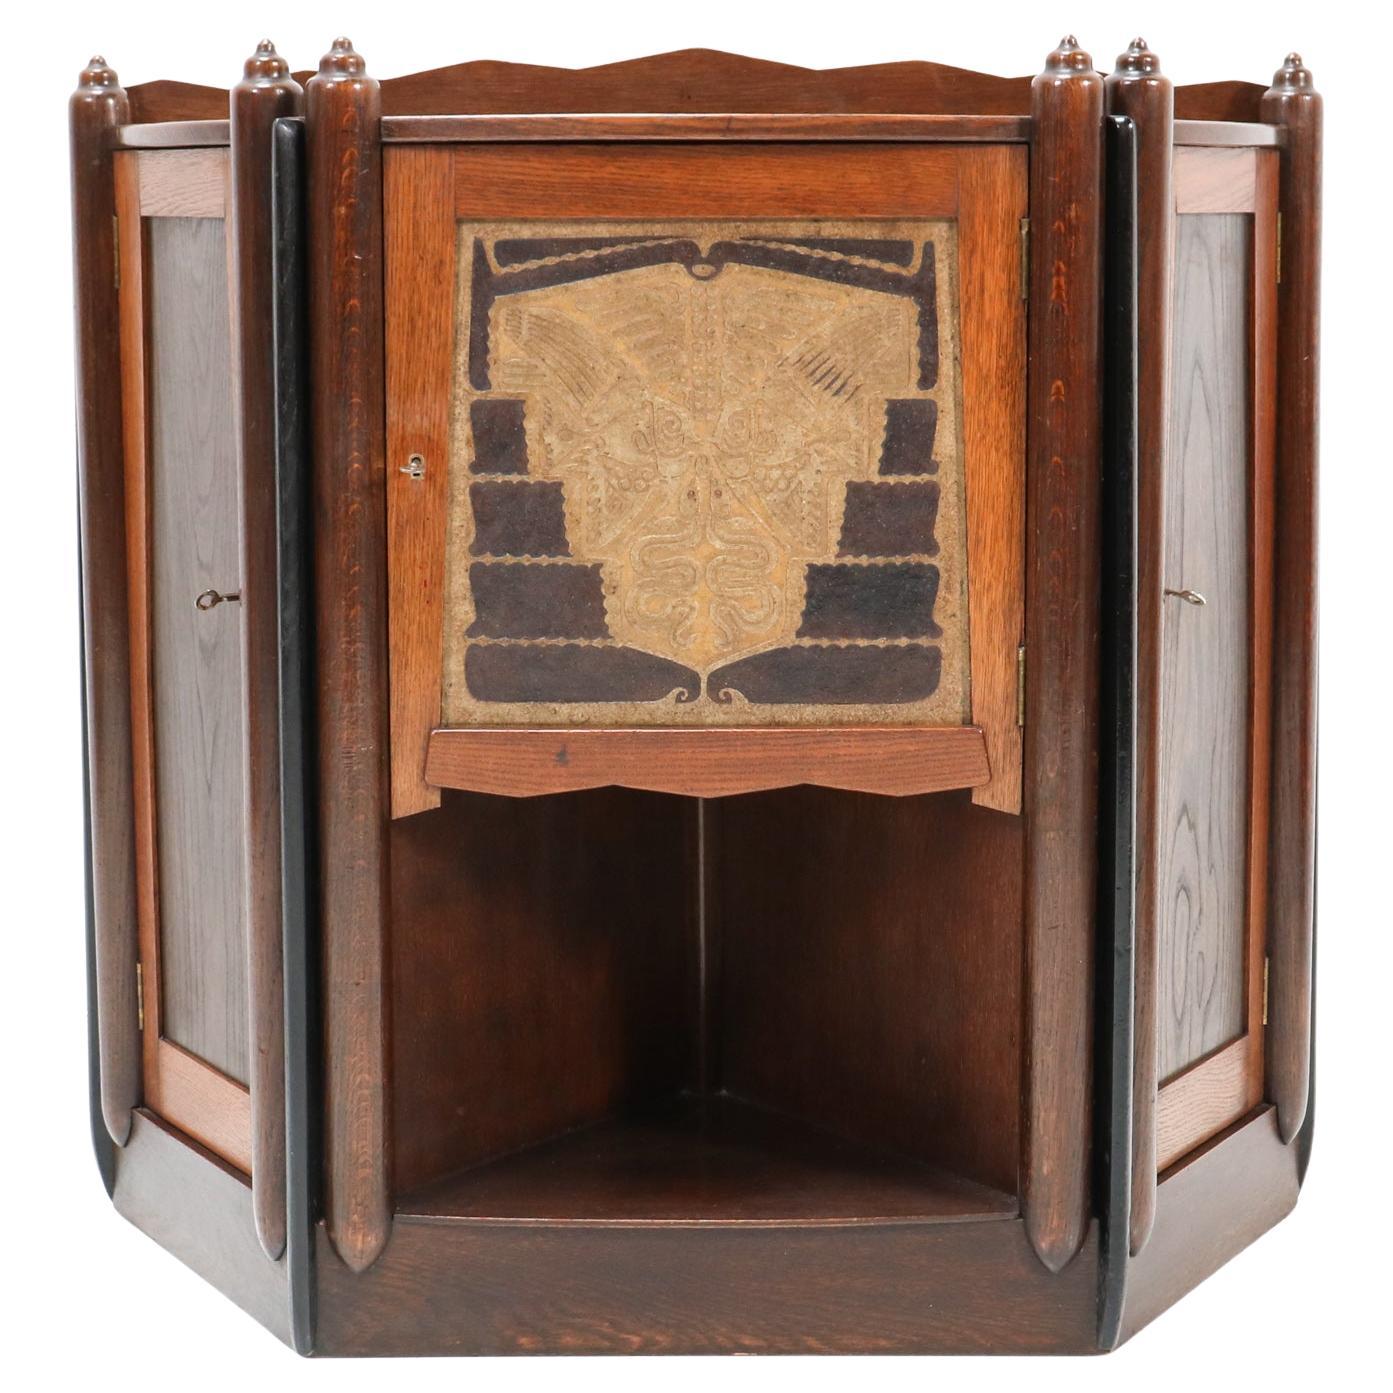  Oak Art Deco Amsterdamse School   Cabinet  by Chris Bartels, 1920s For Sale